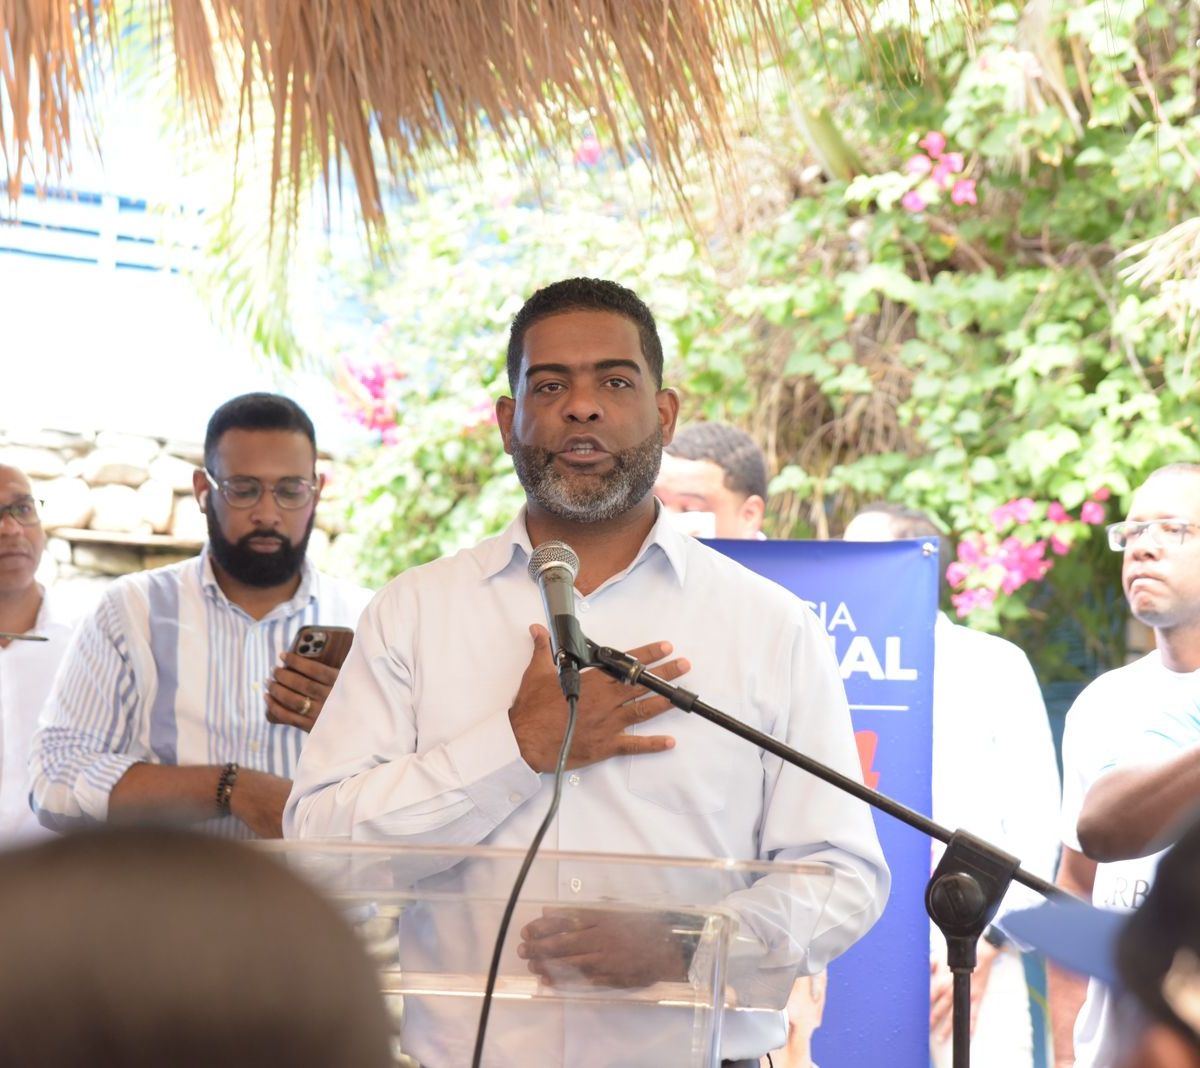 Afirman Justicia Social ofrece oportunidades a quienes son excluidos en otros partidos –  (República Dominicana)